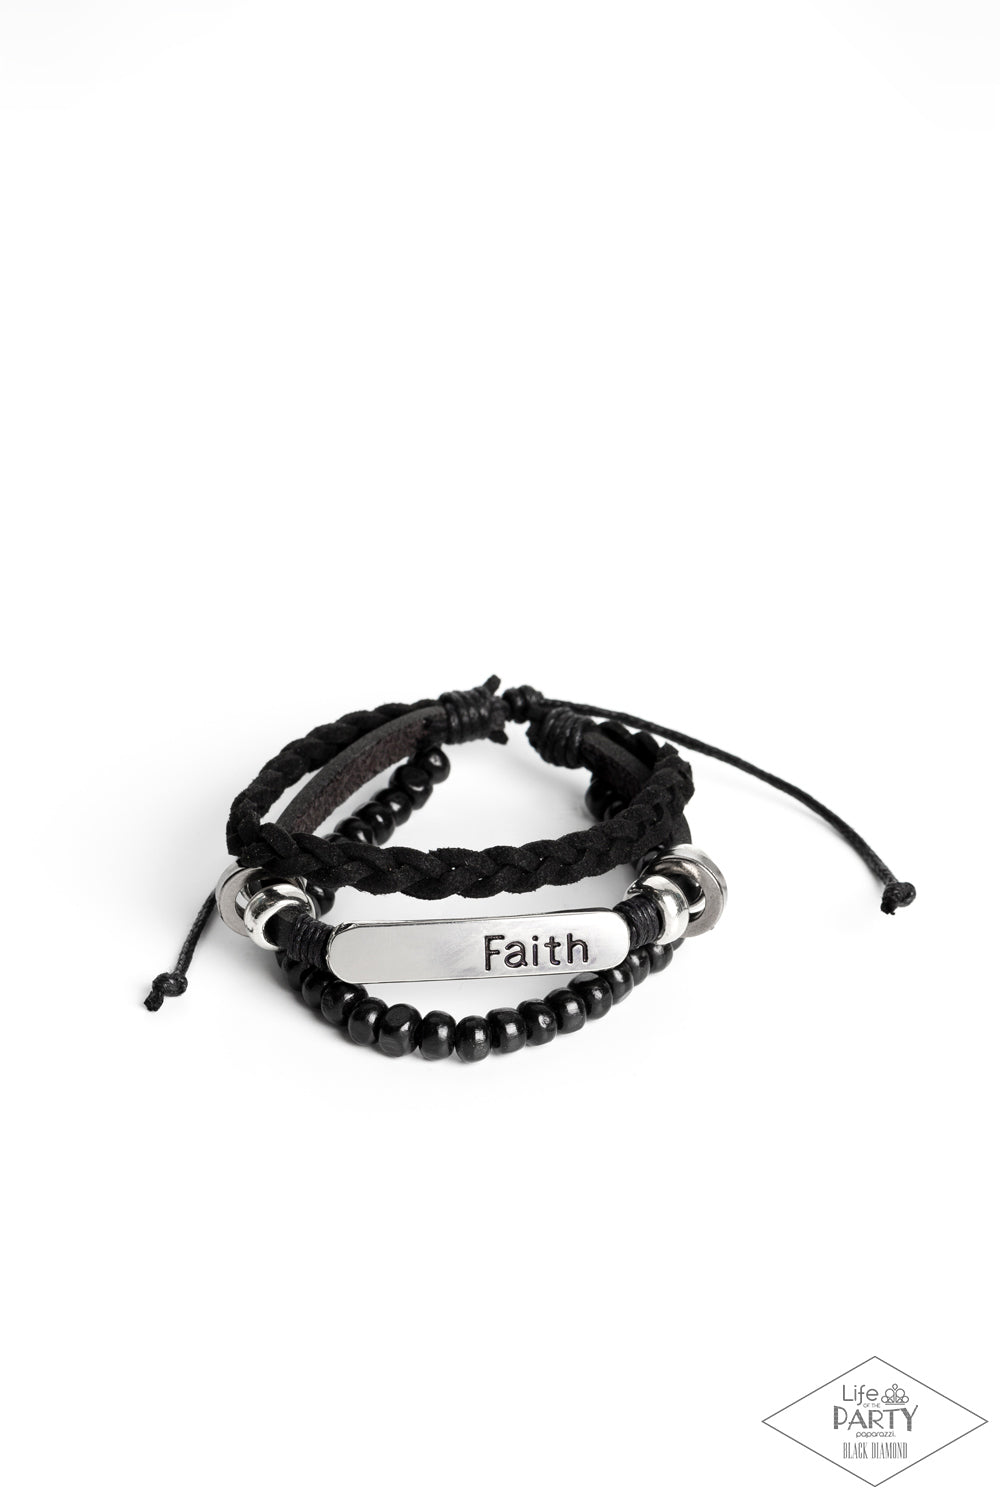 Let Faith Be Your Guide - Black Bracelet - Princess Glam Shop